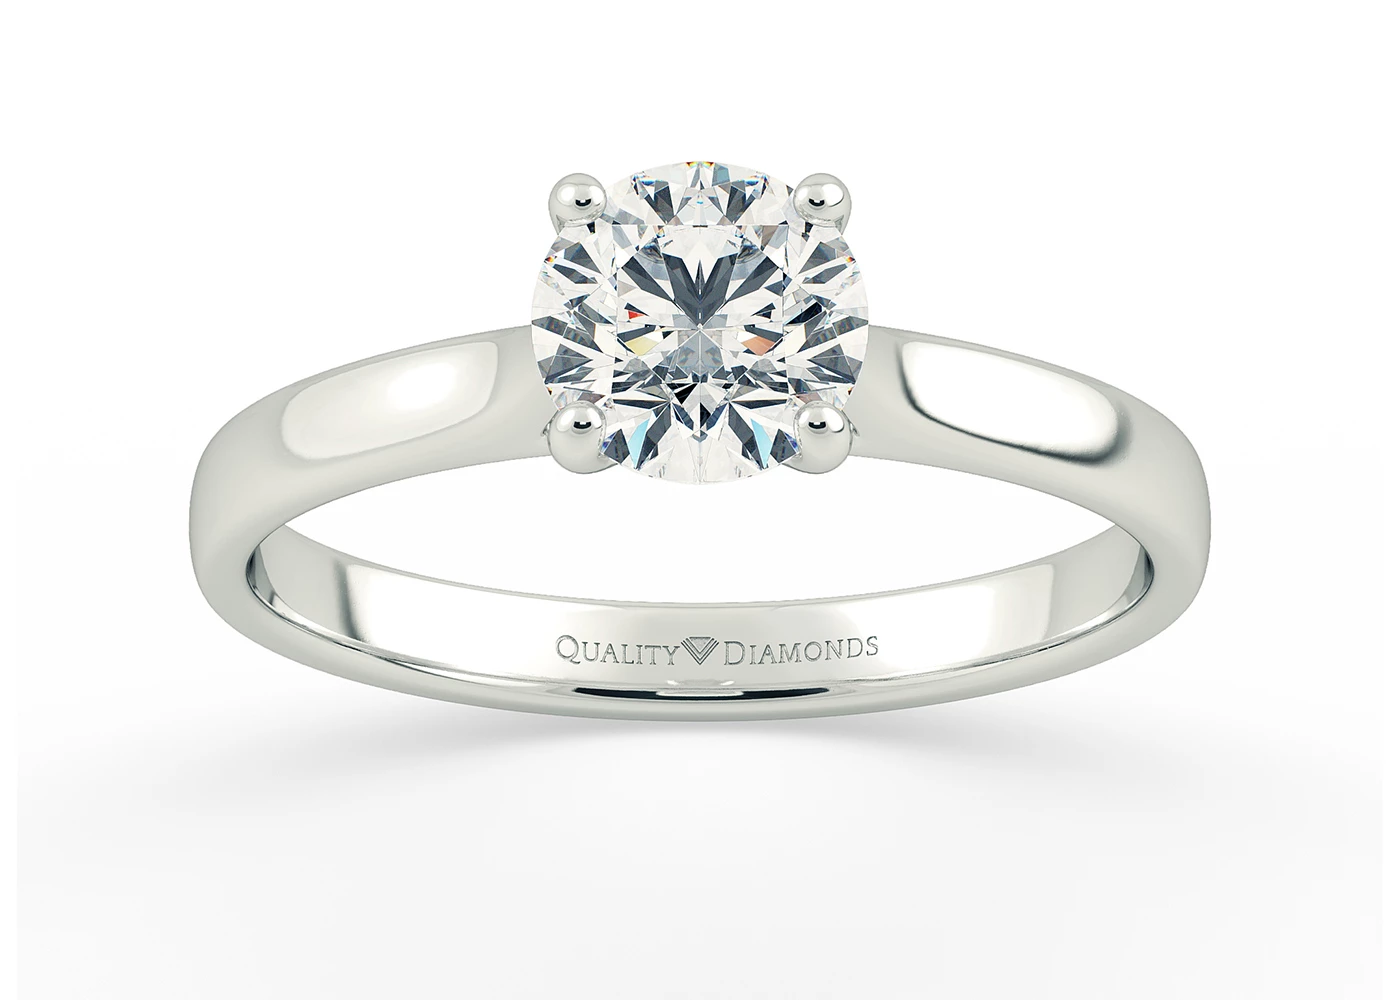 Round Brilliant Clara Diamond Ring in Platinum